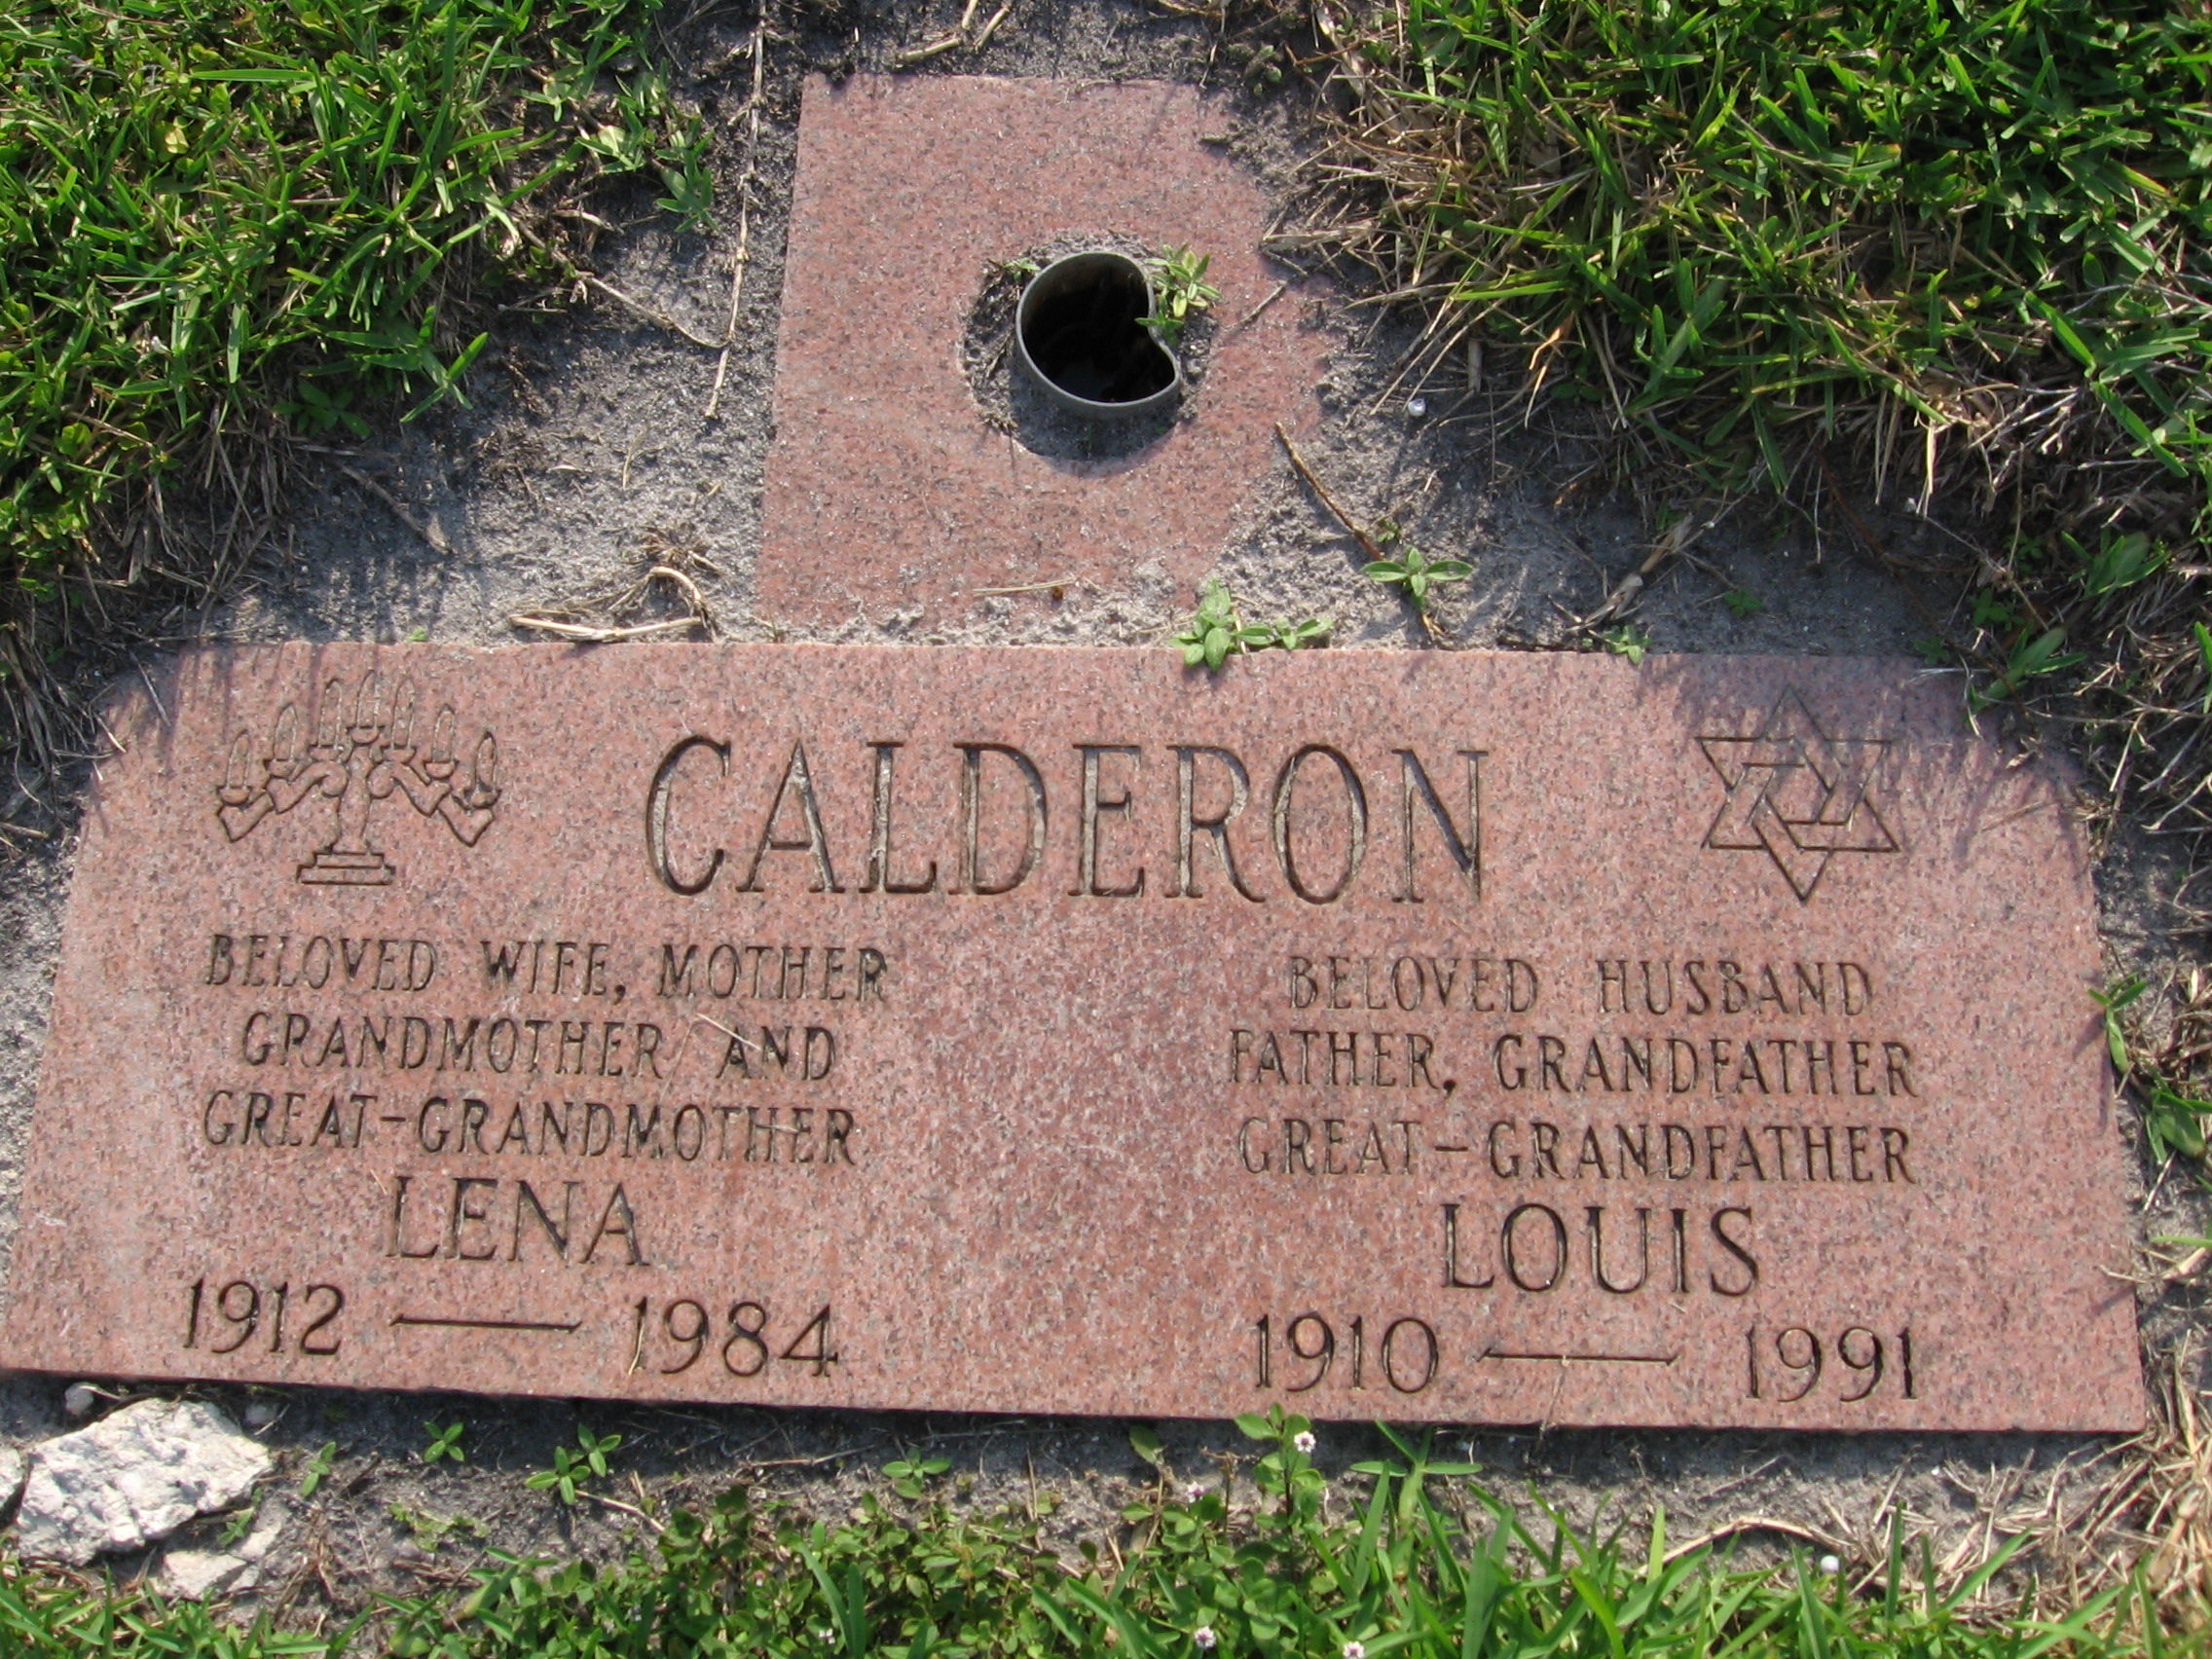 Louis Calderon